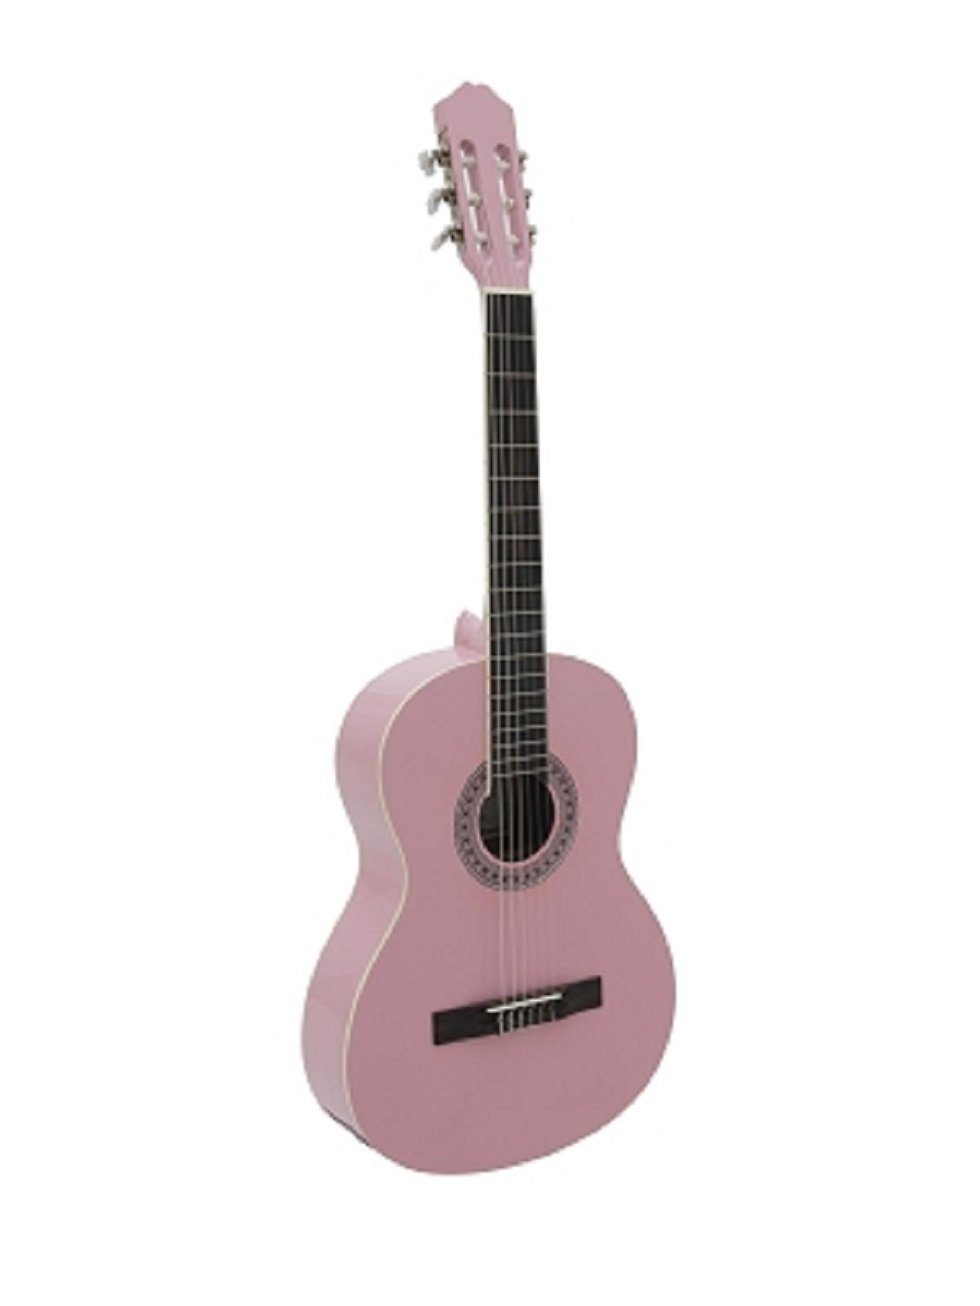 DIMAVERY Akustikgitarre AC-303 Klassikgitarre, 4/4, verschiedene Farben erhältlich